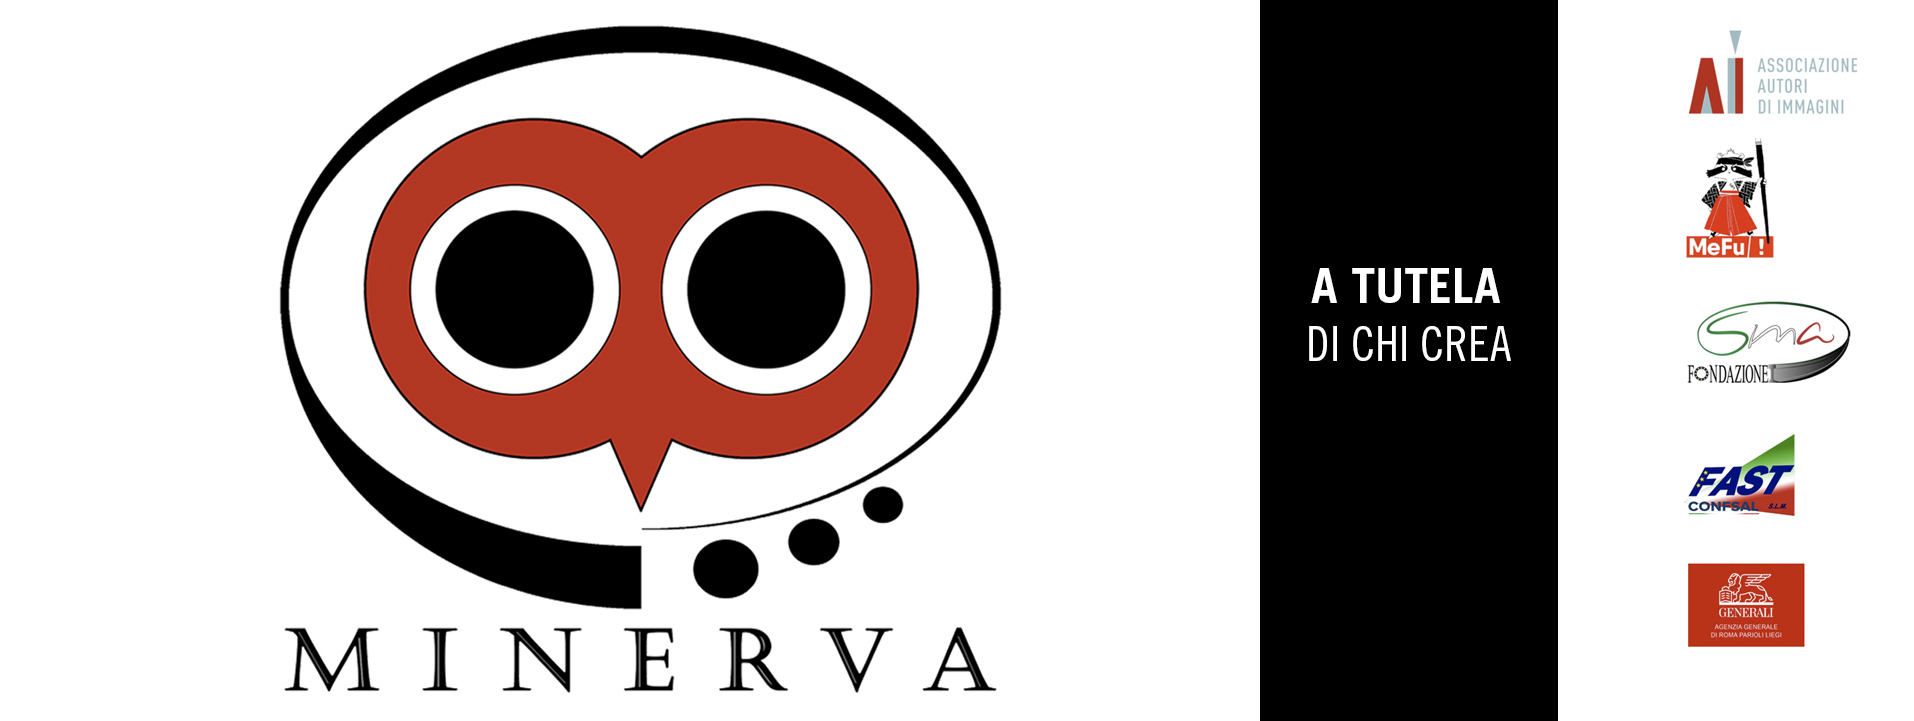 minerva-site